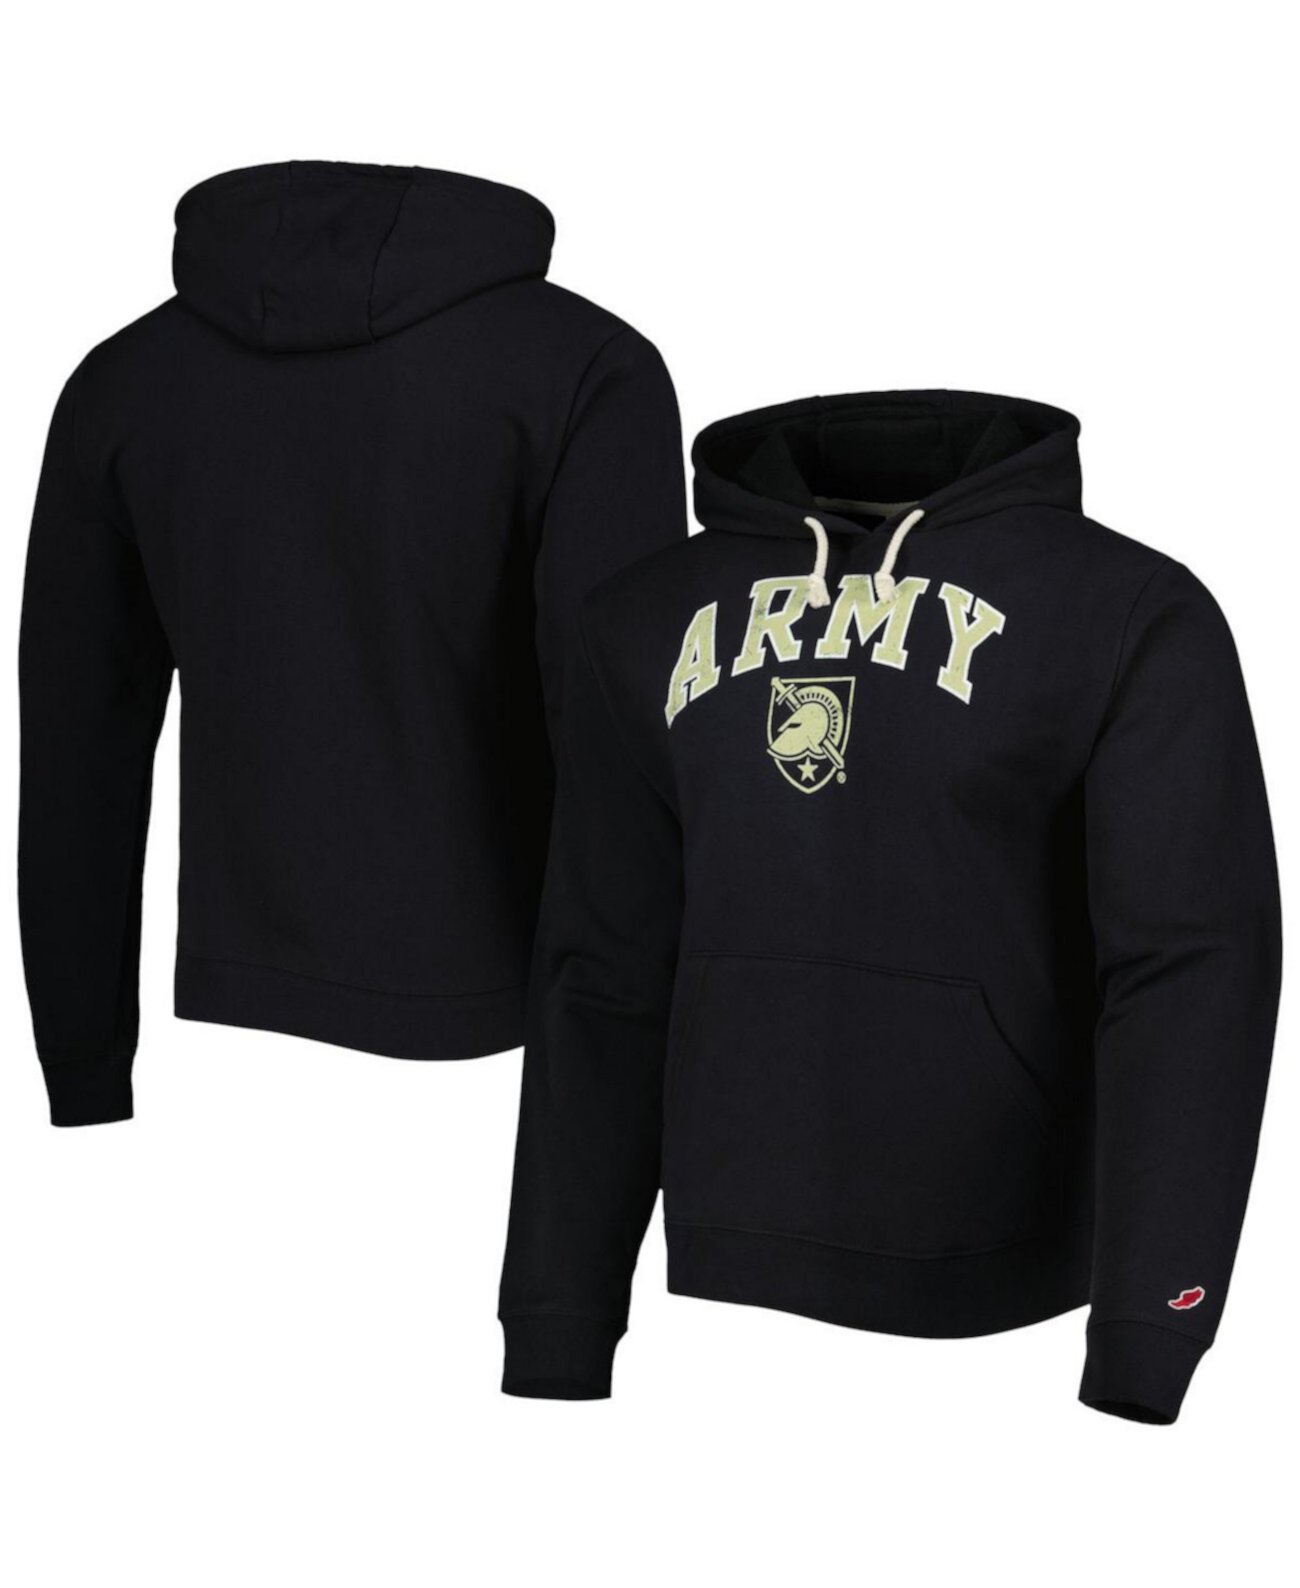 Мужской черный армейский флисовый пуловер с капюшоном Black Knights Arch Essential League Collegiate Wear